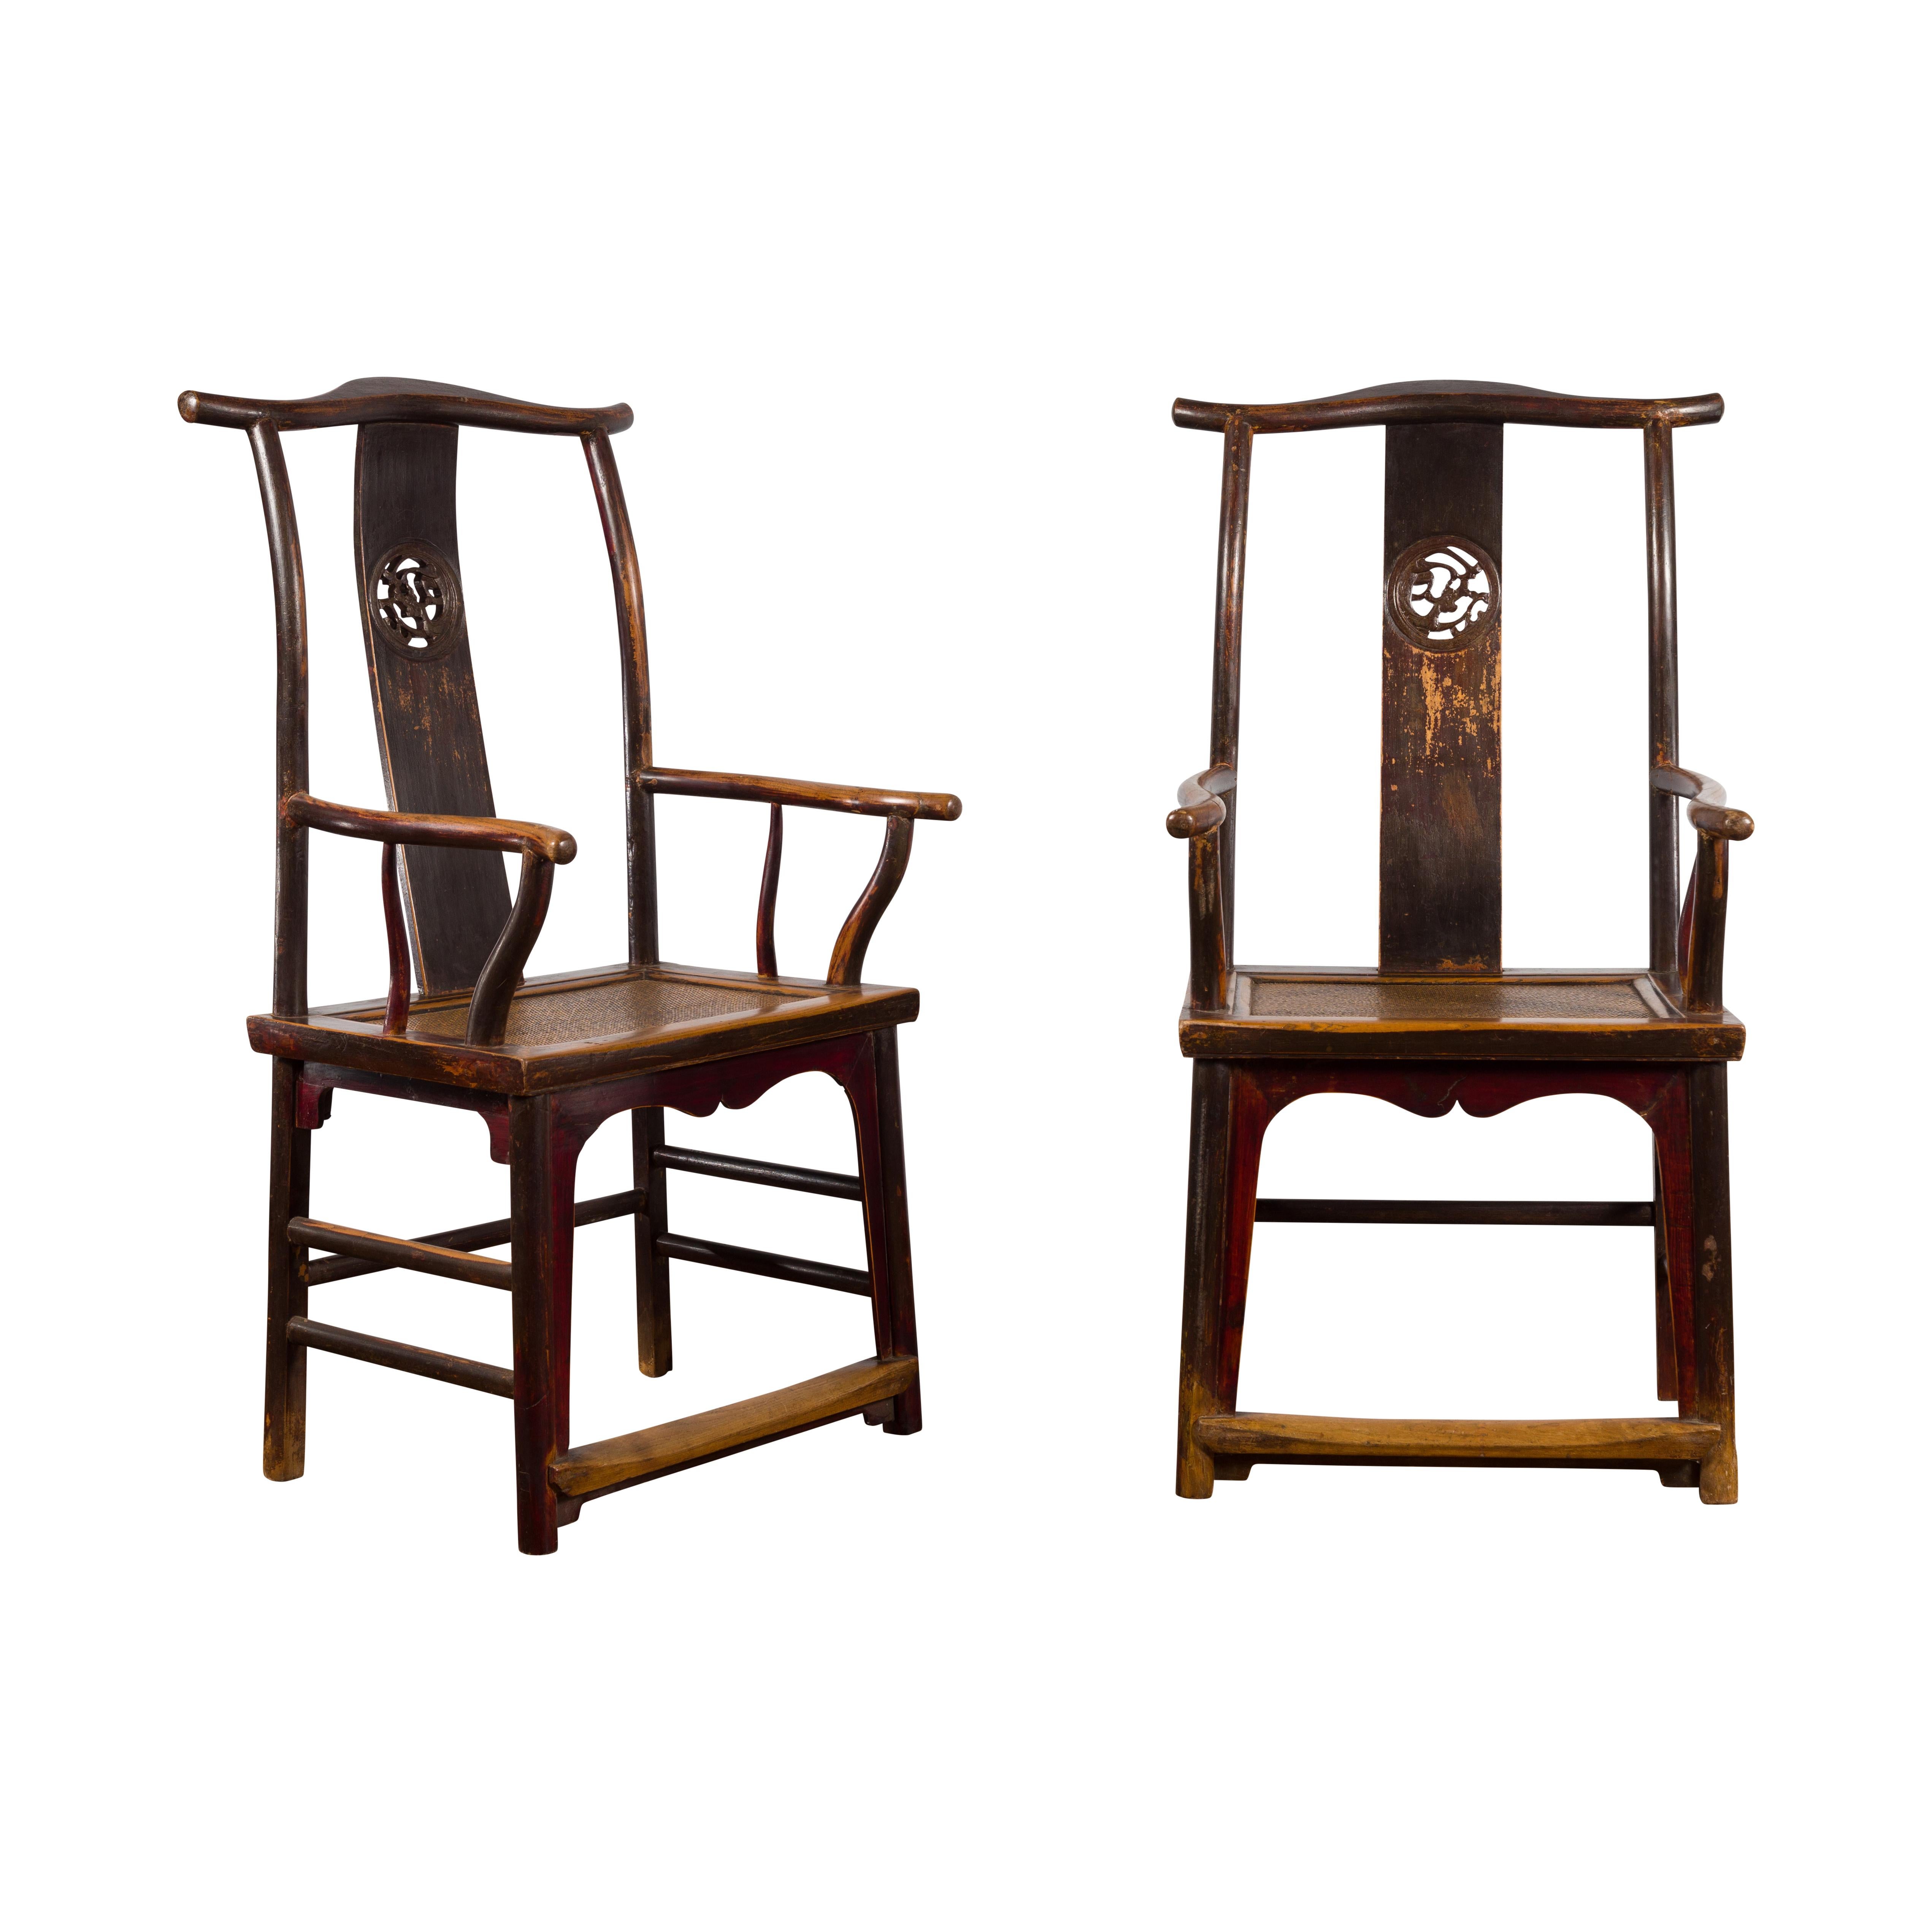 Ein Paar chinesische Stühle mit Jochlehne aus der Qing-Dynastie aus dem 19. Jahrhundert, aus Naturholz mit geschnitzten Leisten. Dieses Sesselpaar wurde während der Qing-Dynastie in China hergestellt und zeichnet sich durch eine hohe Rückenlehne